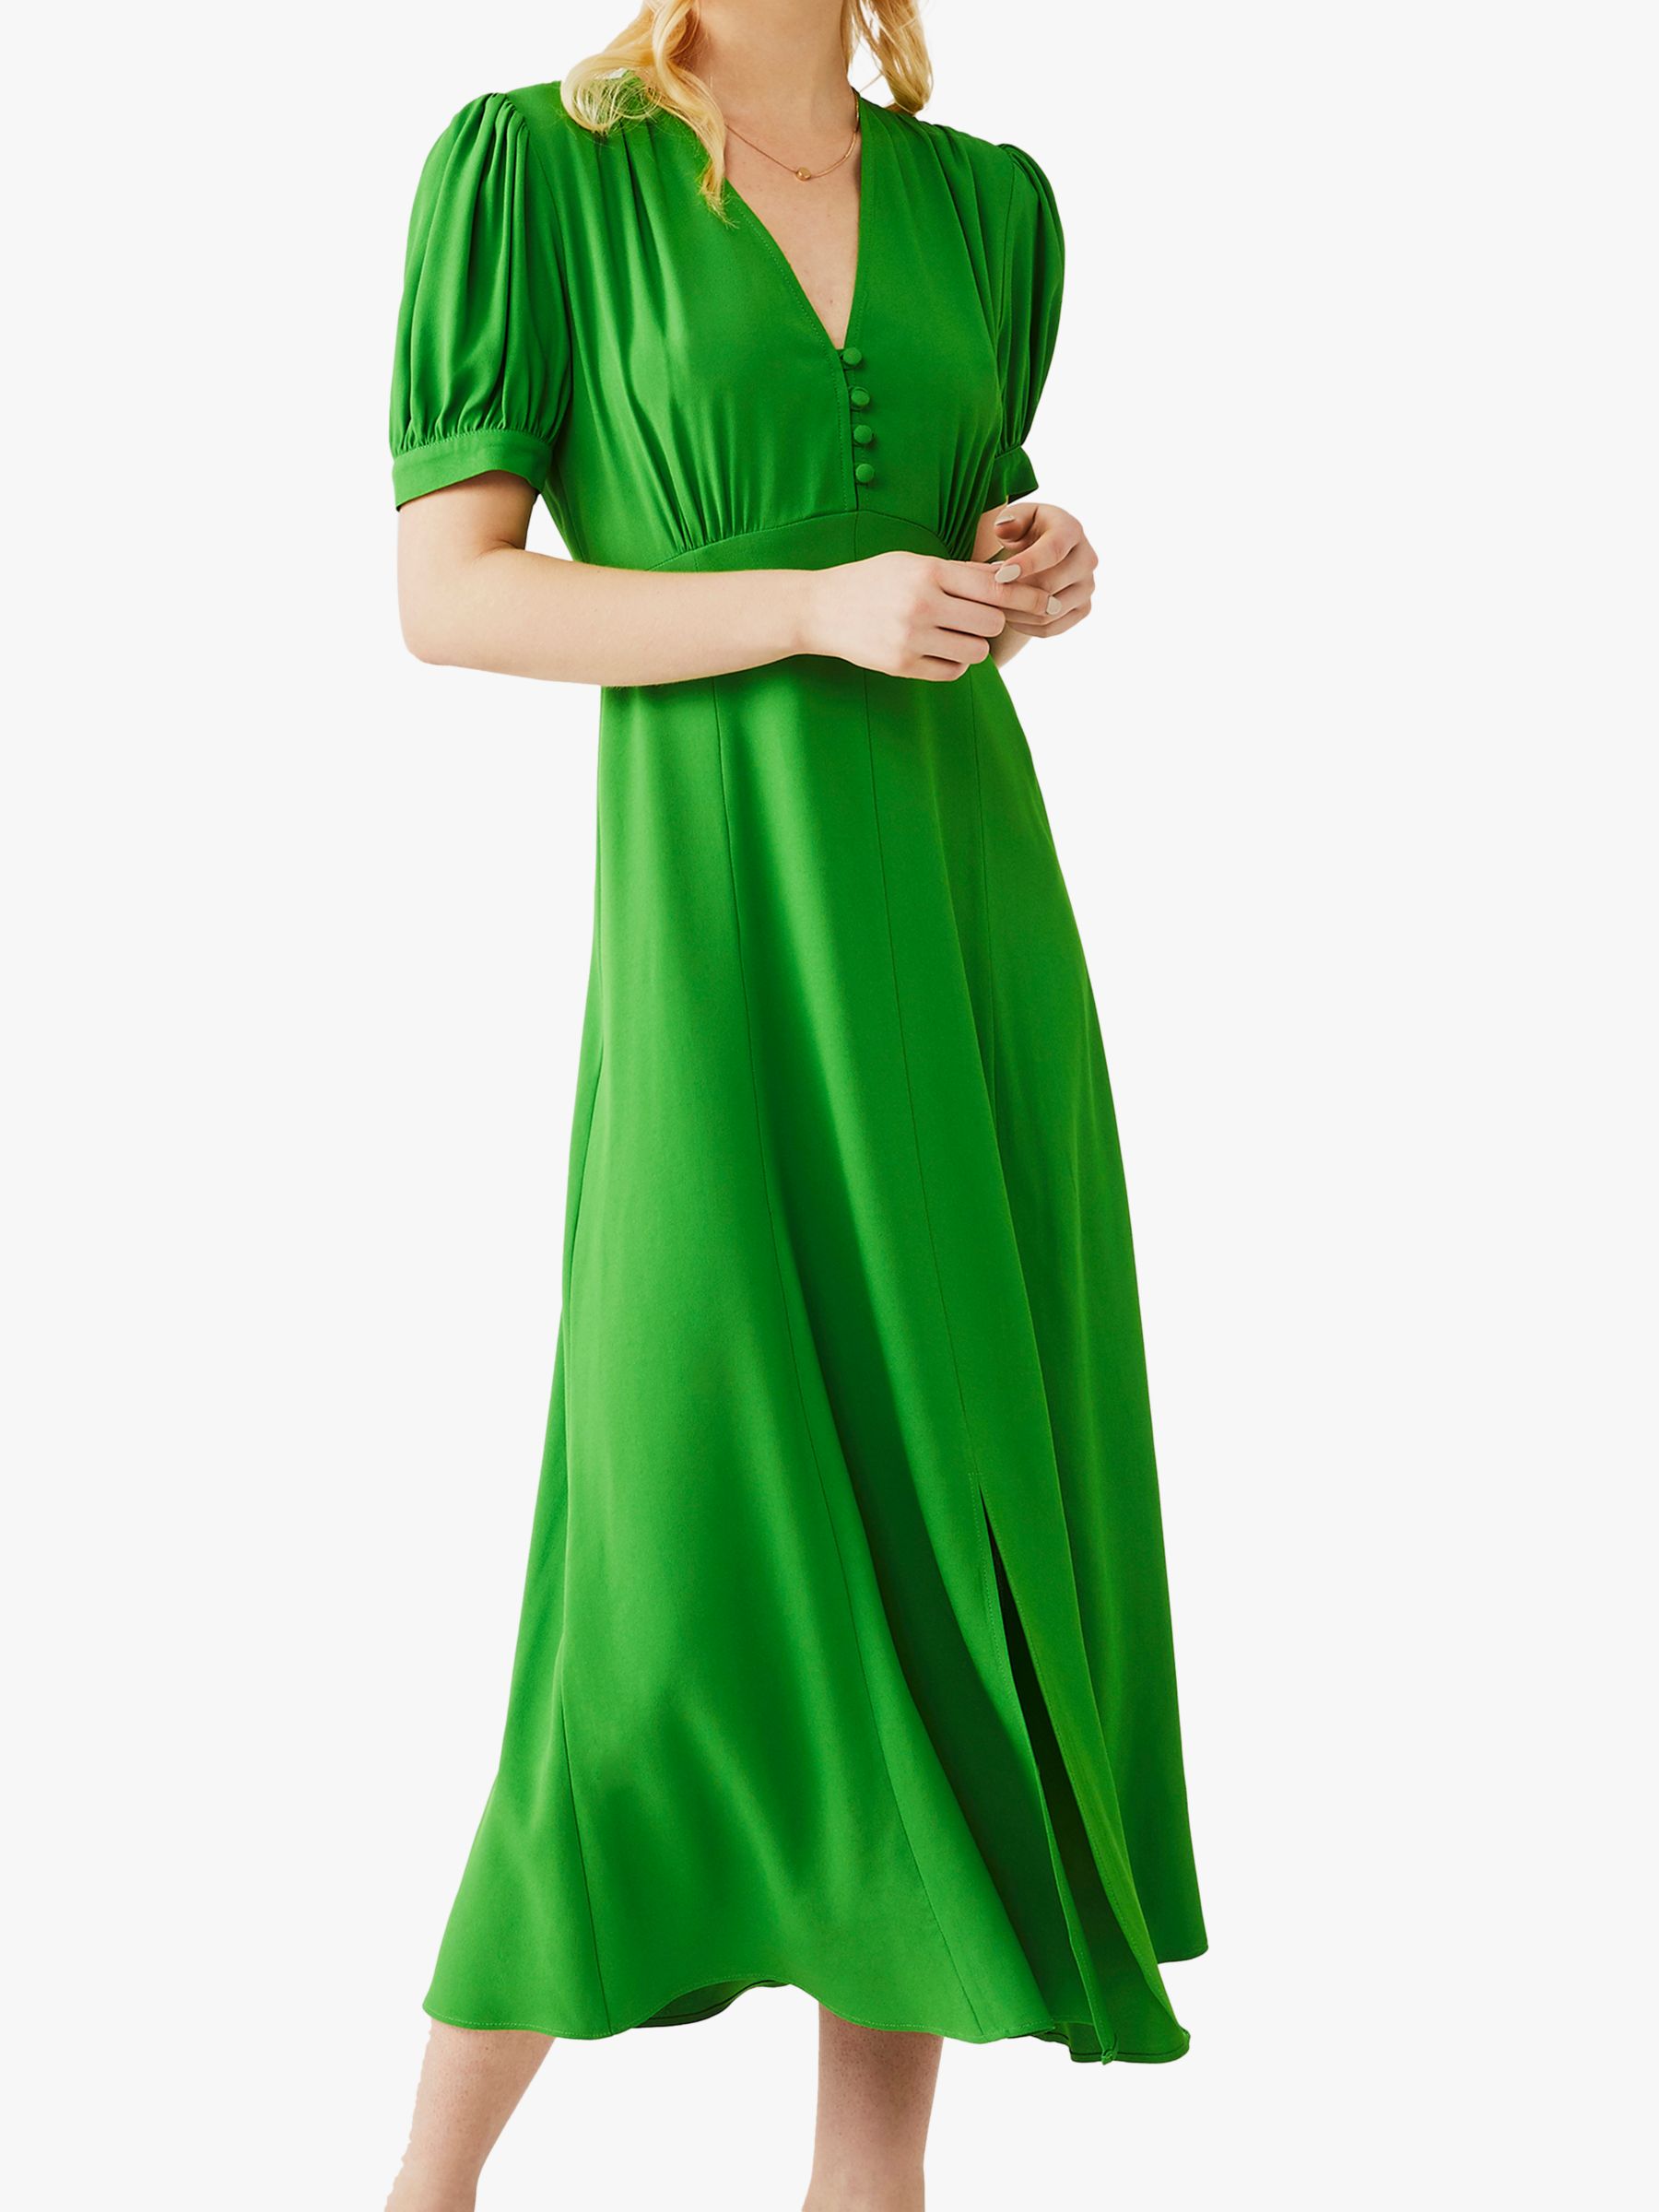 bright green satin dress